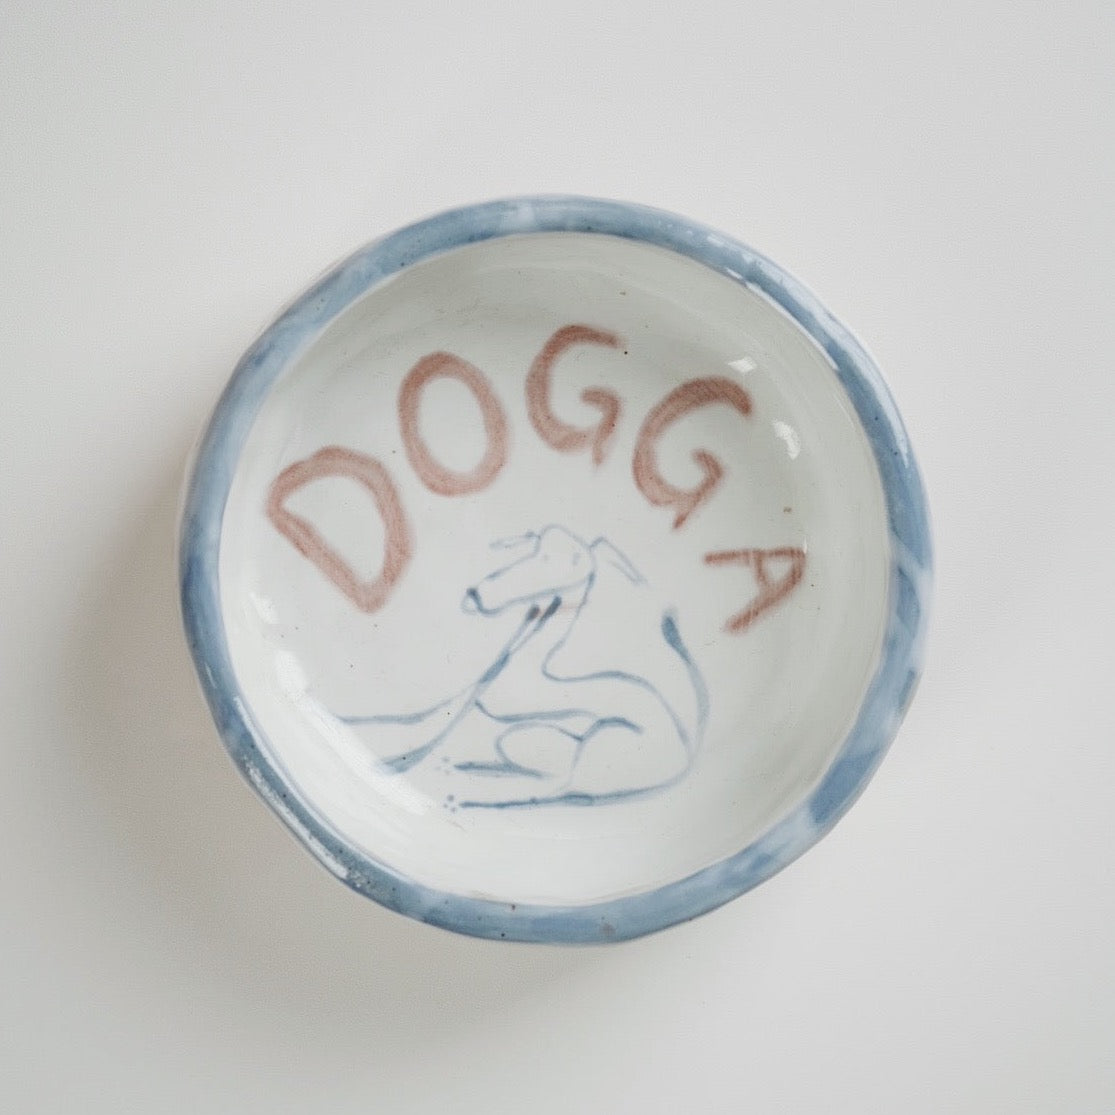 Dog Bowl - Dogga